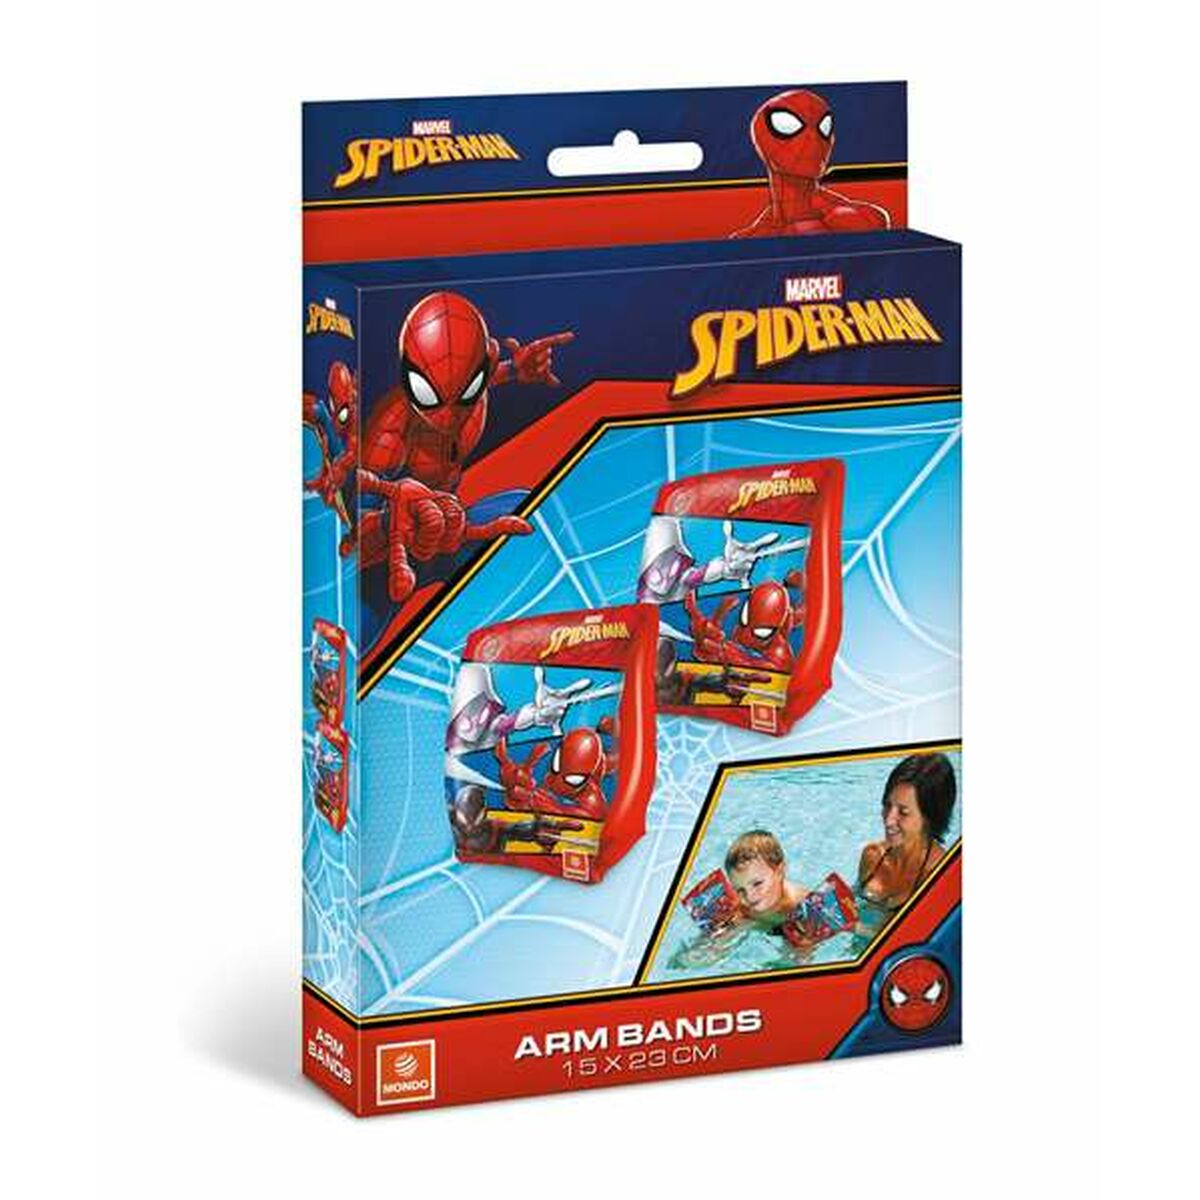 Sleeves Spider-Man 25 x 15 cm Sleeves